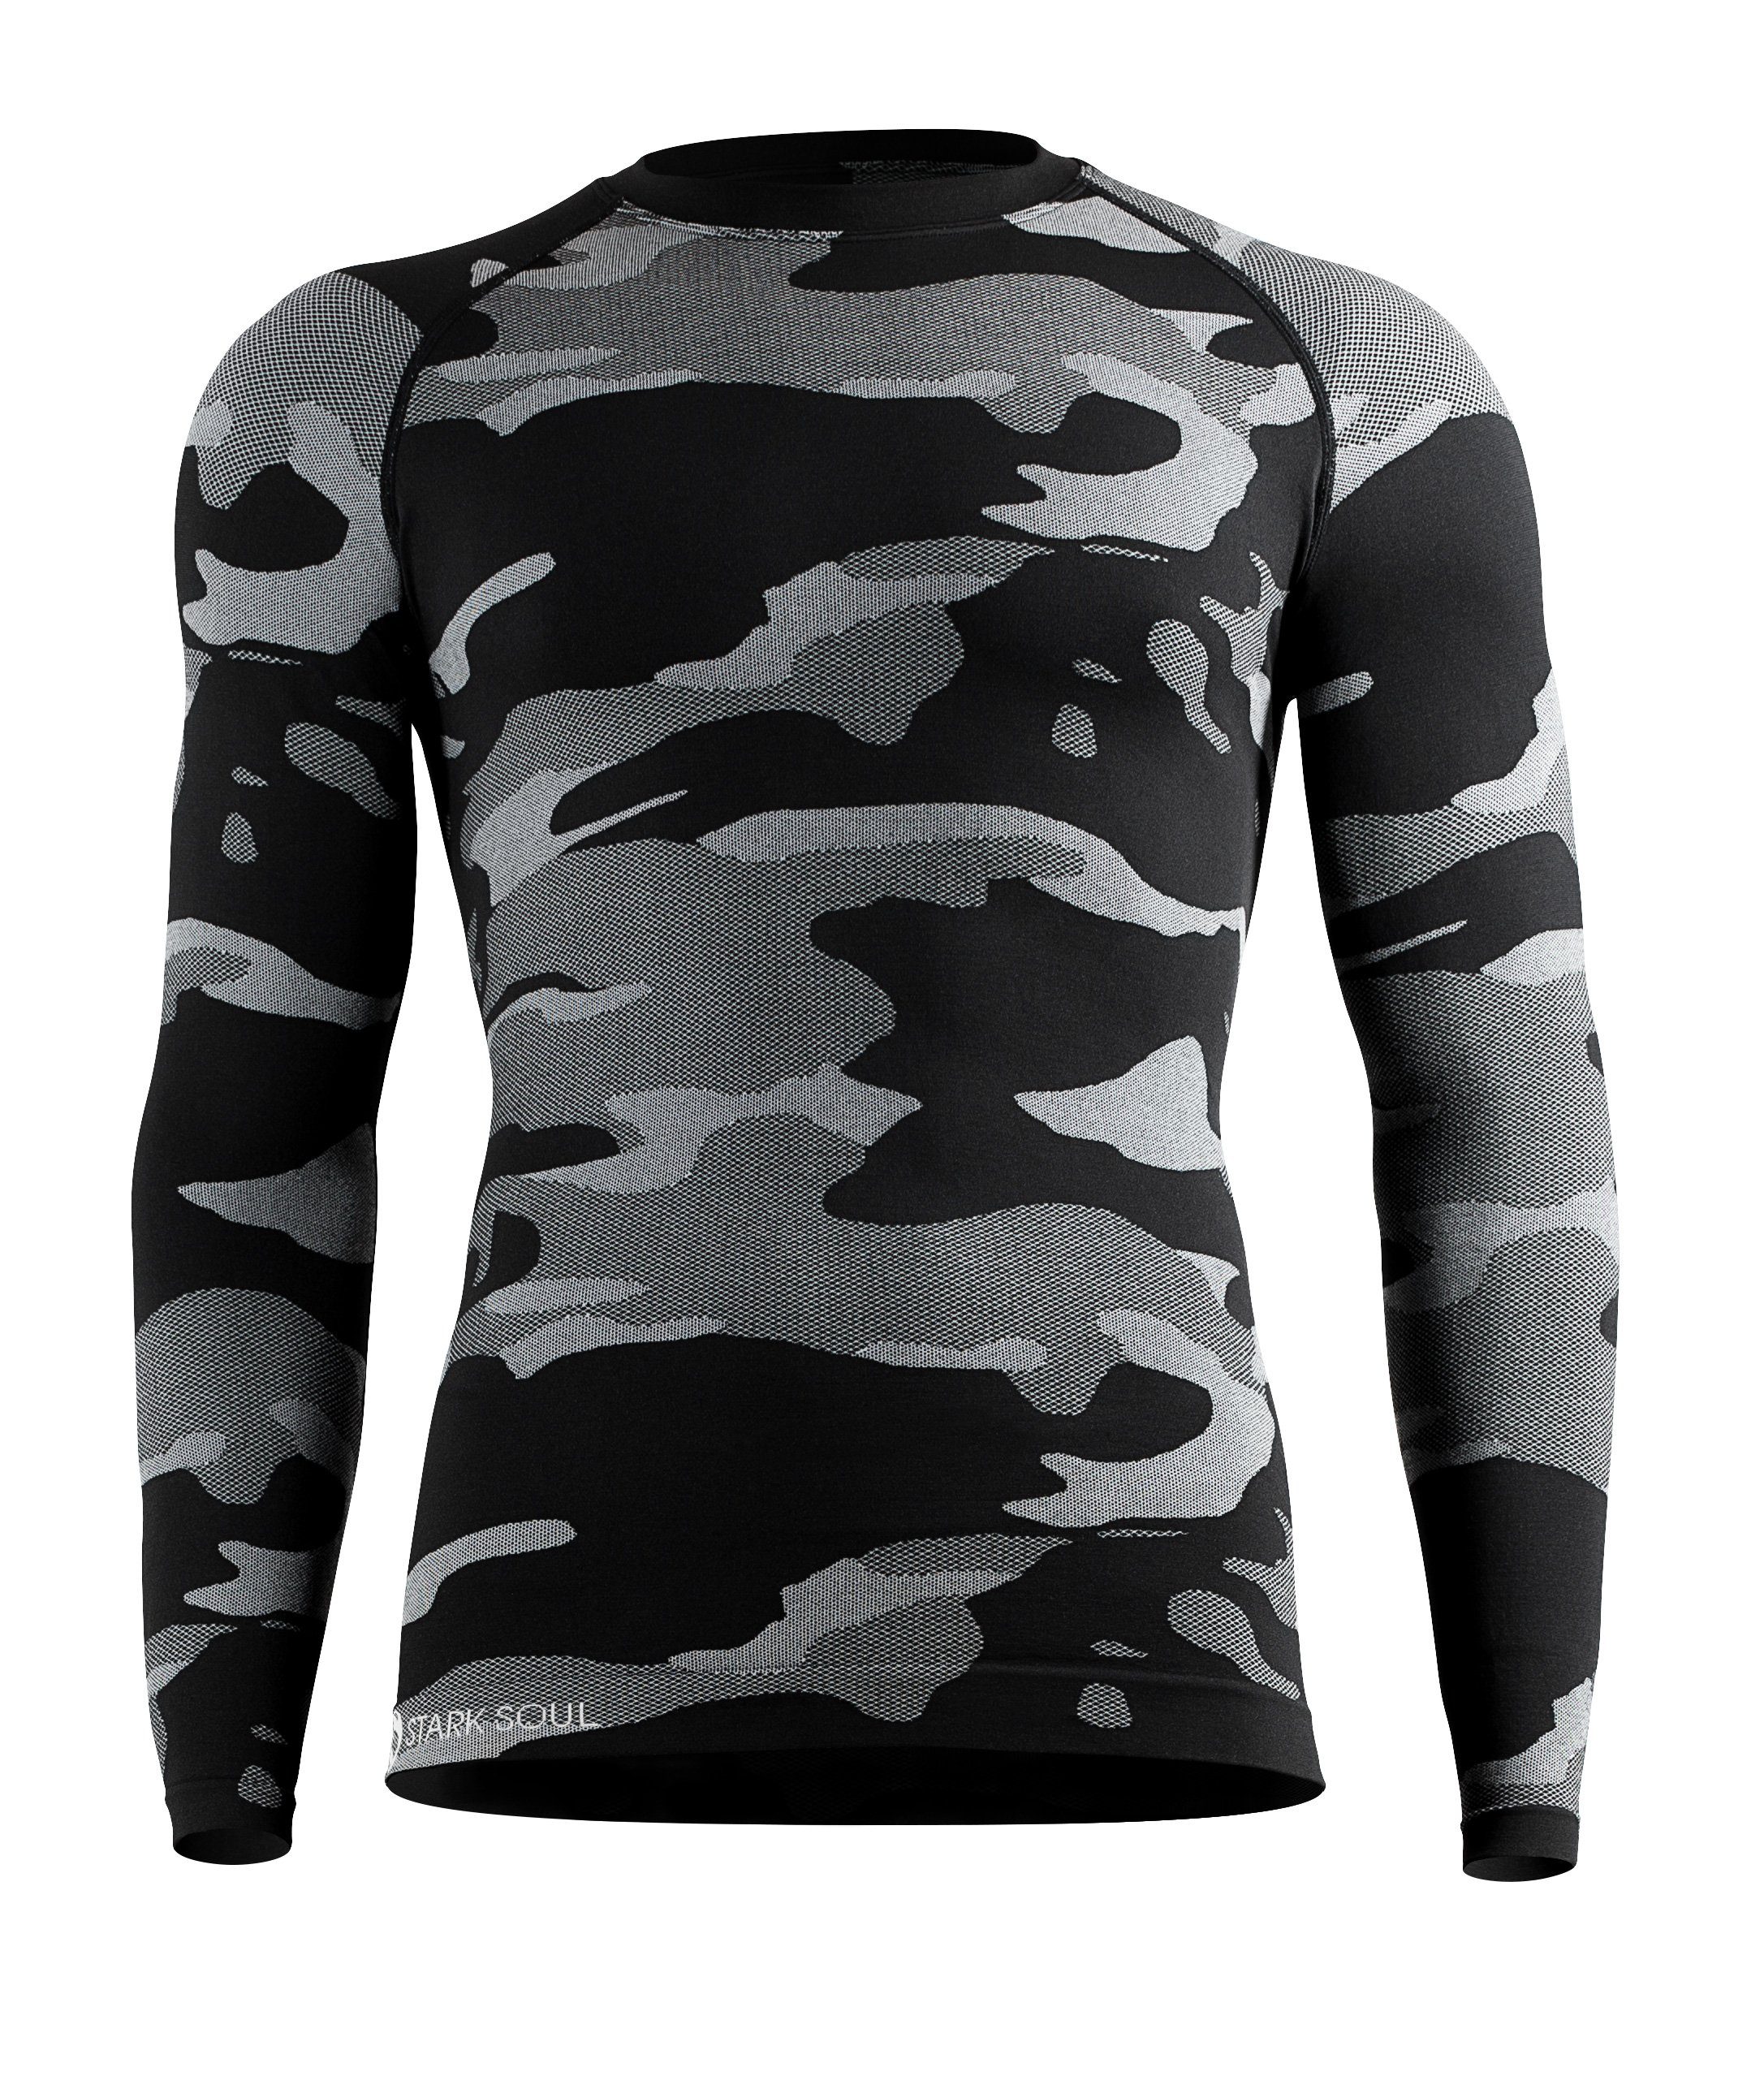 Beliebte Artikel diese Woche Stark Soul® Funktionsshirt Thermo-Funktionshirt Langarm Herren Unterwäsche, Camouflage, Outdoor-Ski Grau